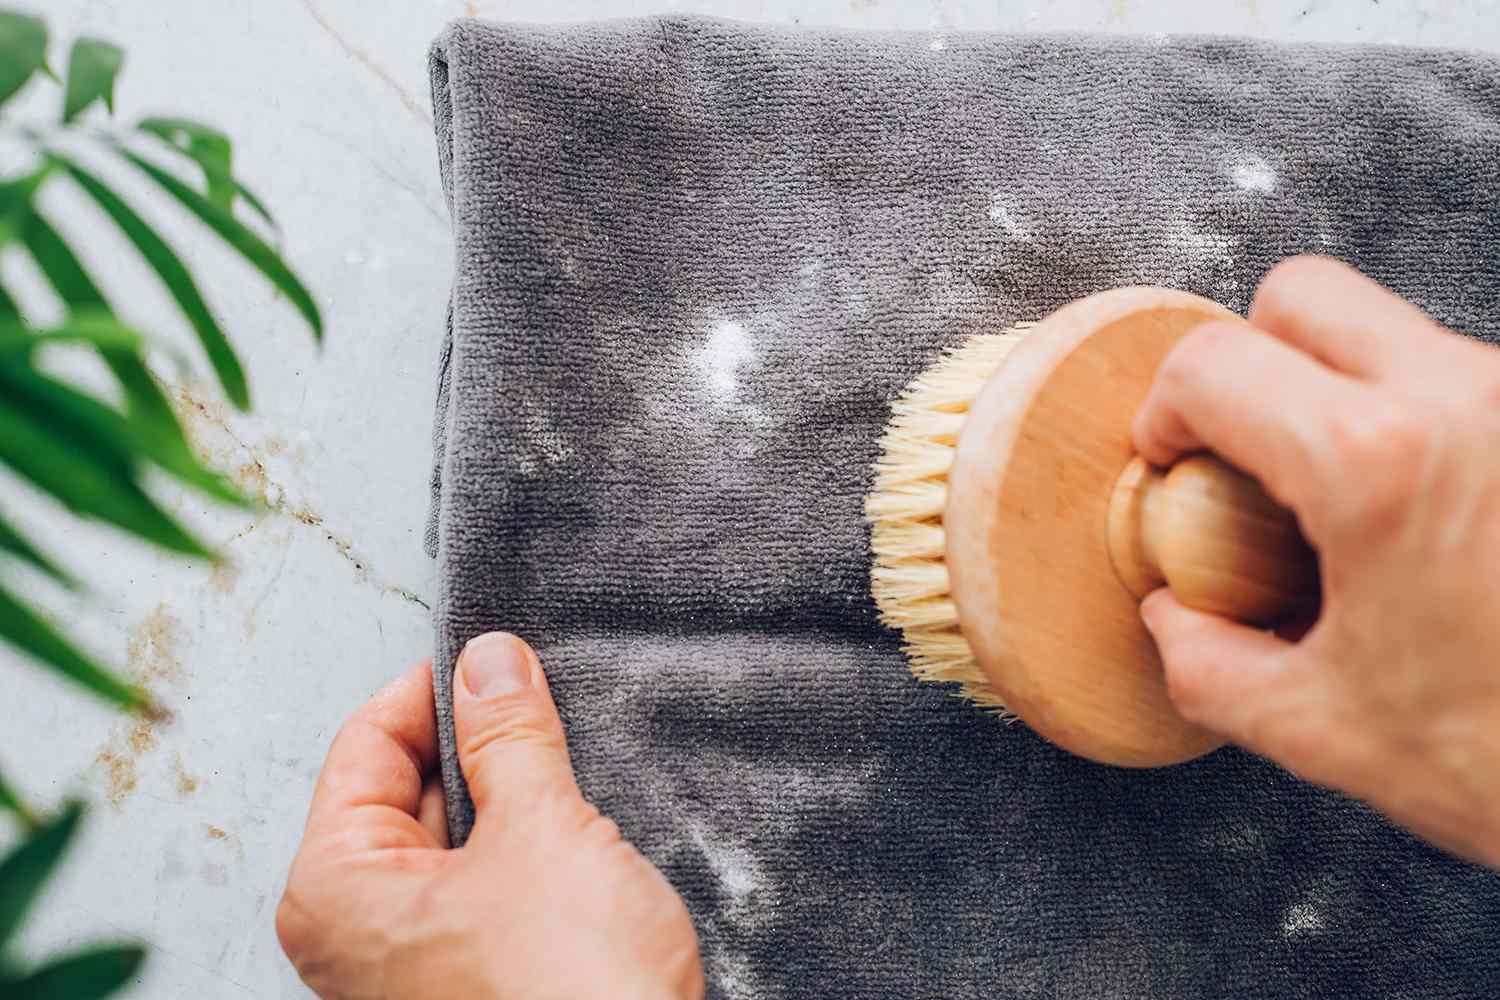 Cepillo de cerdas suaves pasando suavemente sobre esporas de moho en tejido sólo para limpieza en seco